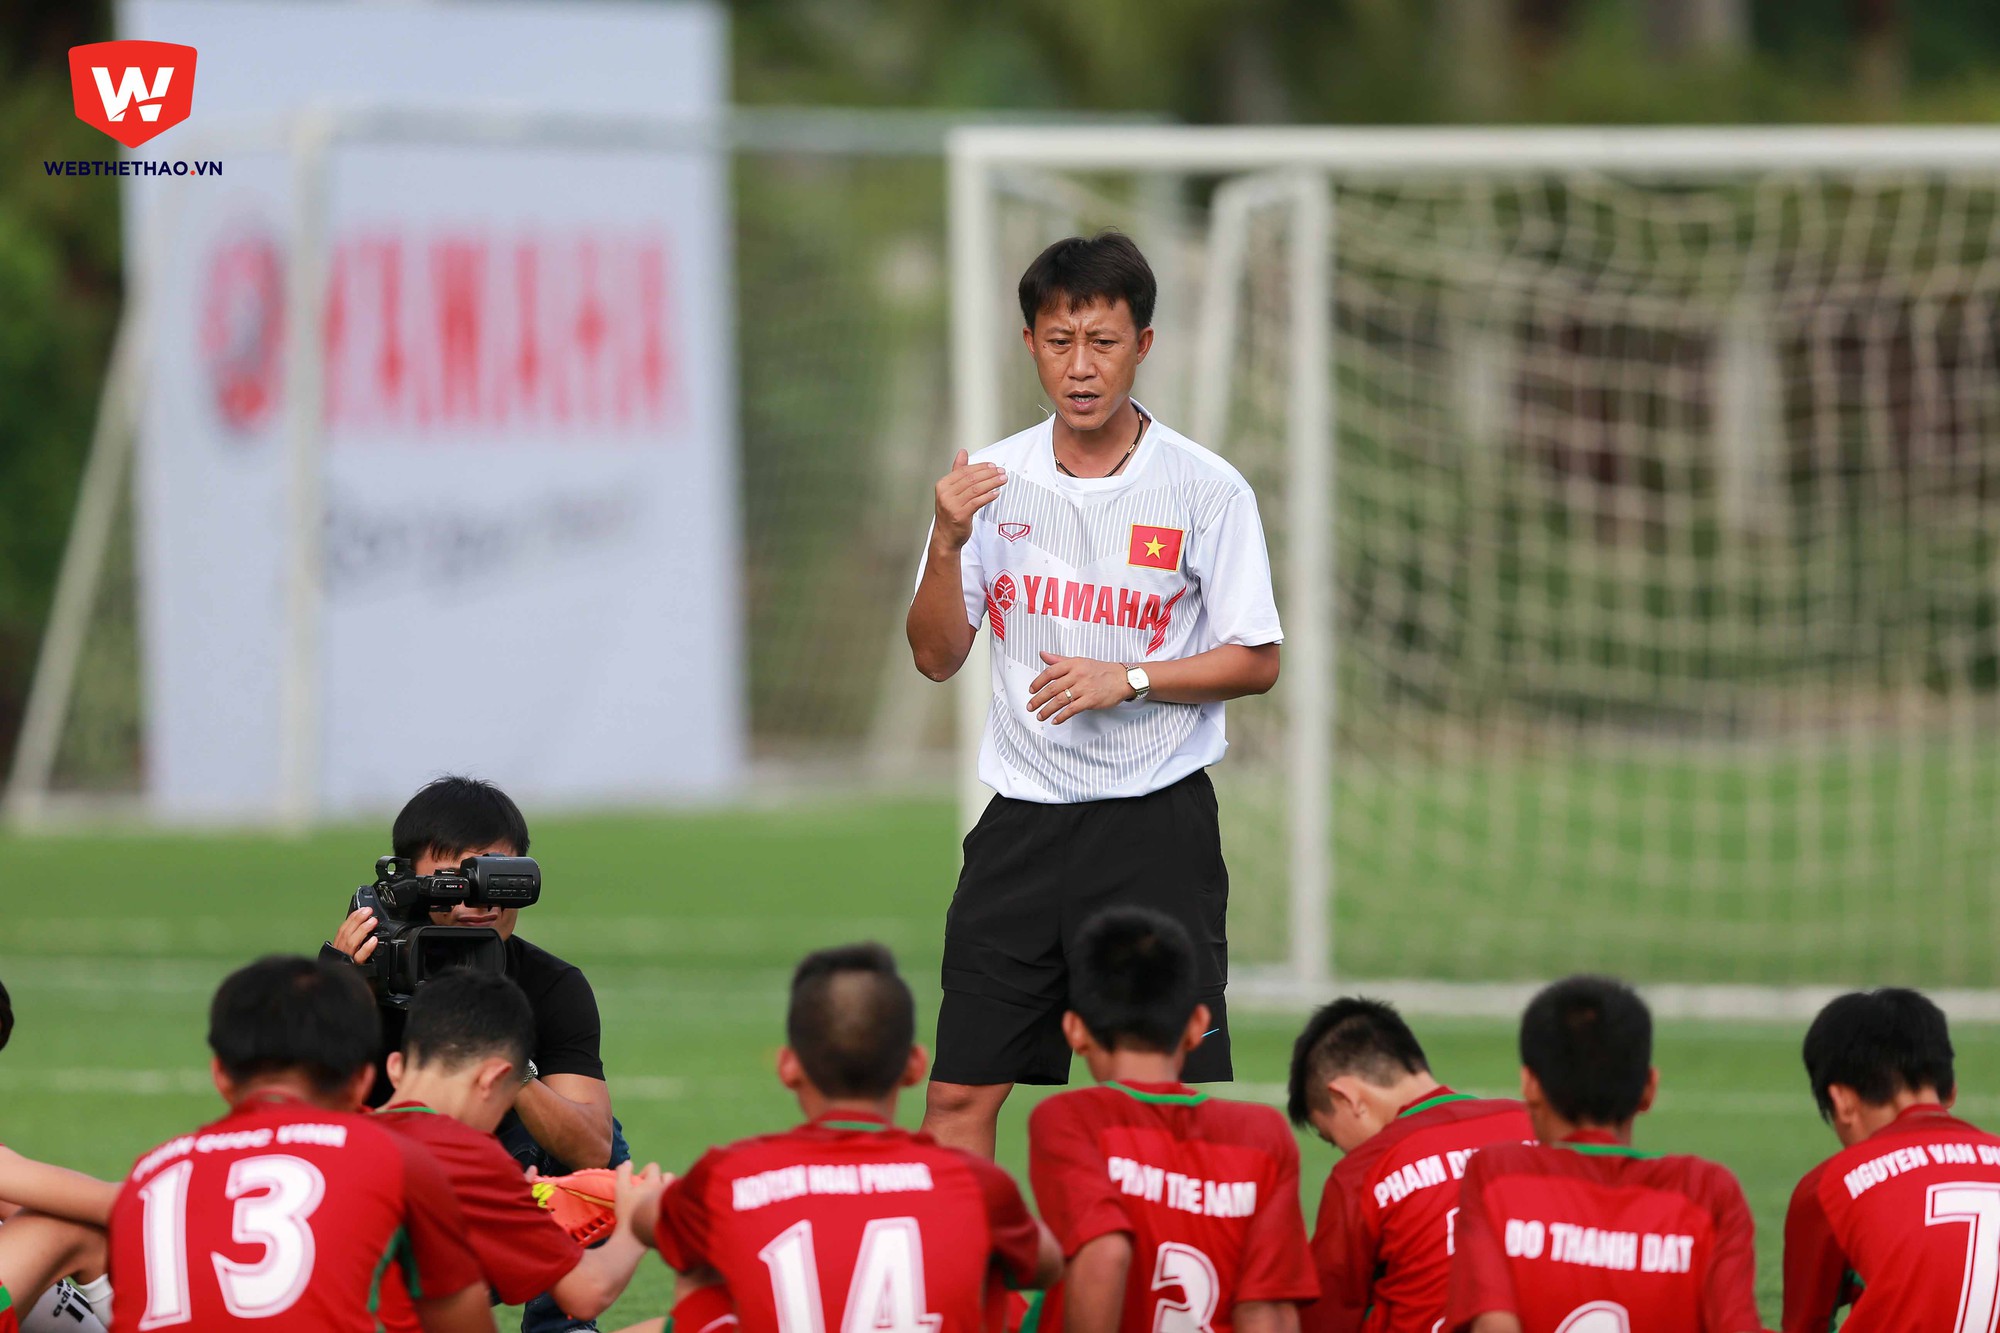 Toàn đội tiến hành họp kỹ thuật ngay trên sân bóng trước khi kết thúc buổi tập. HLV Nguyễn Thành Công cho biết ông không đặt nặng vấn đề chuyên môn ở buổi tập đầu tiên này, điều quan trọng là toàn đội đang thể hiện được khát khao chơi bóng của mình.